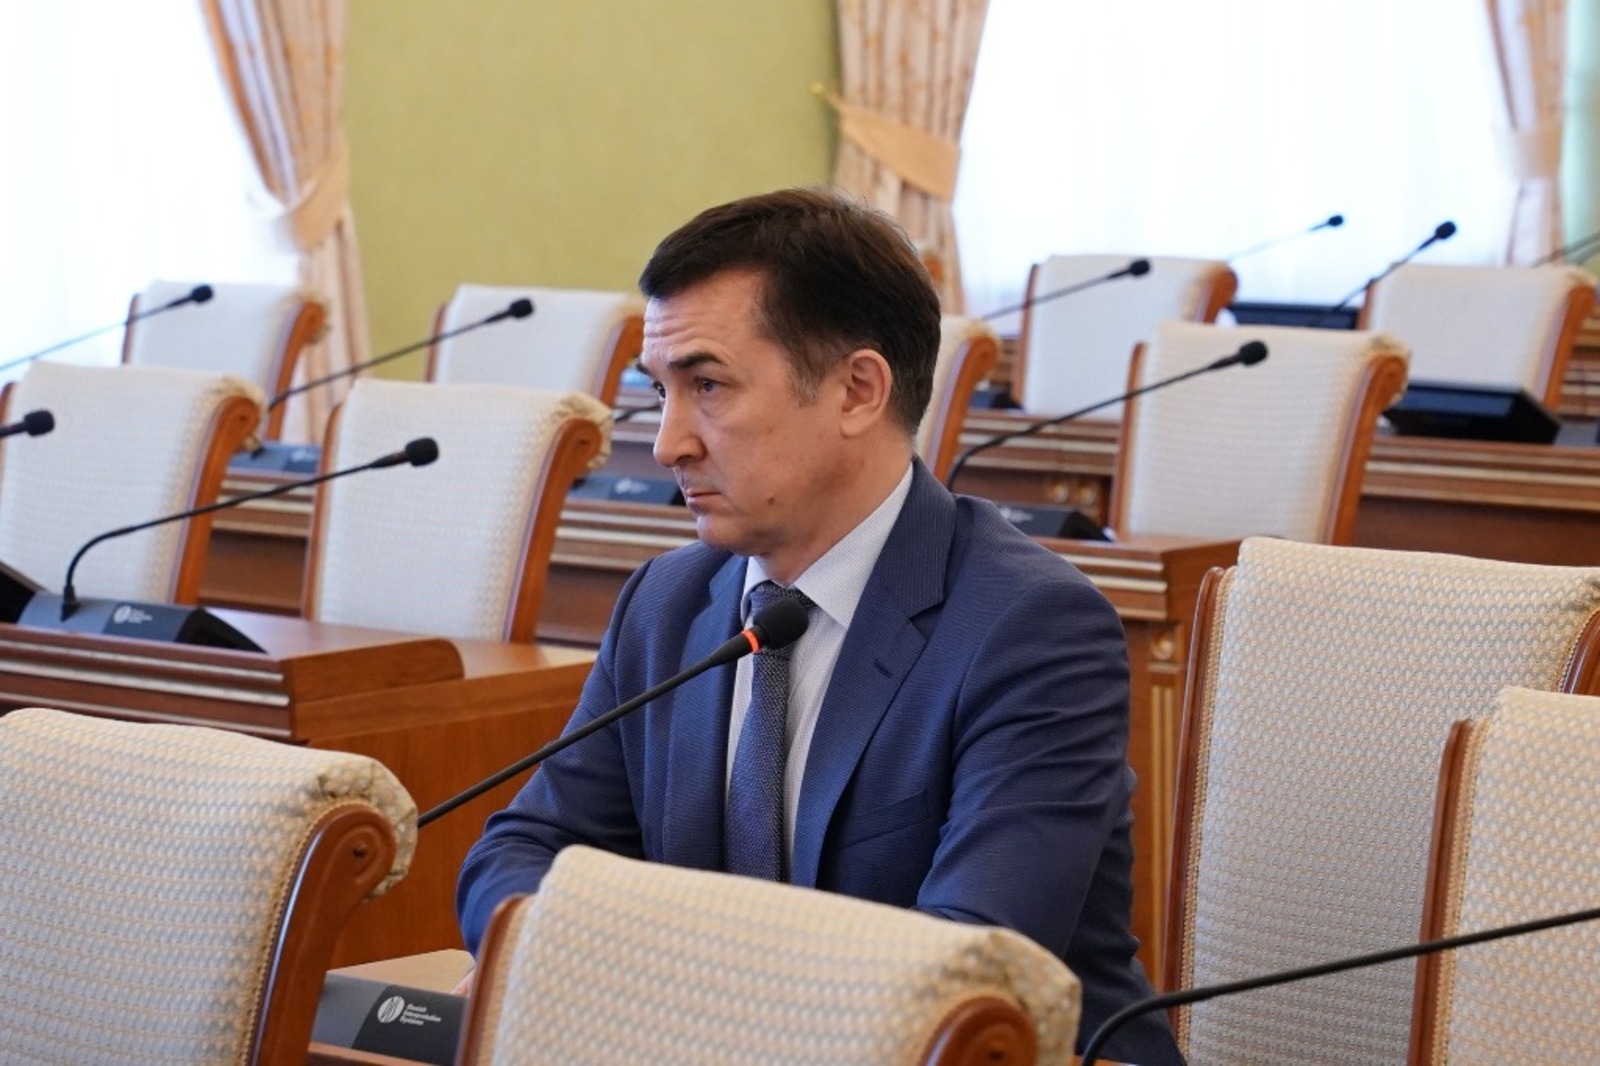 Ринат Баширов стал генеральным директором ХК «Салават Юлаев»